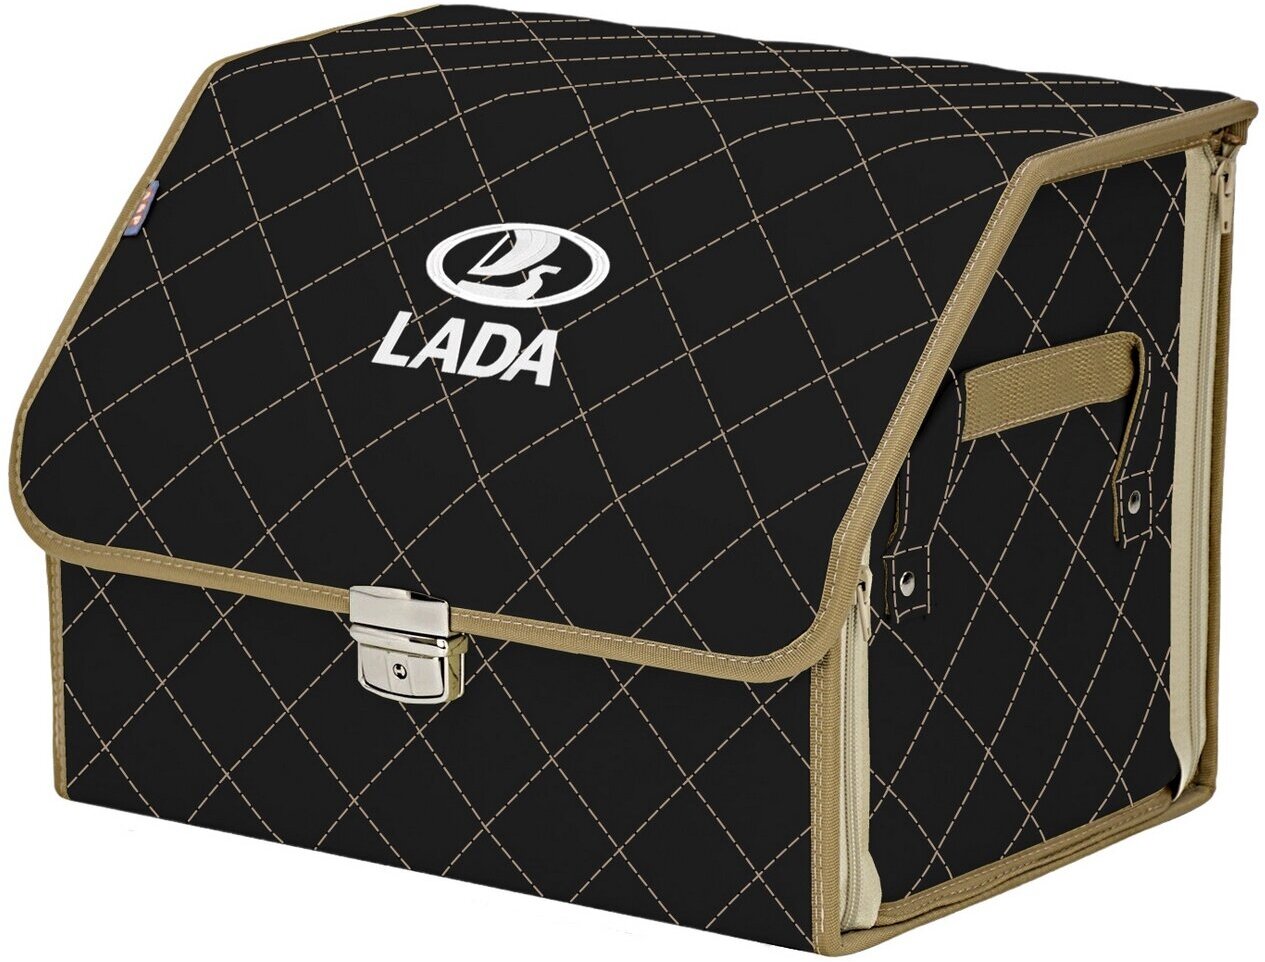 Органайзер-саквояж в багажник "Союз Премиум" (размер M). Цвет: черный с бежевой прострочкой Ромб и вышивкой LADA (лада).